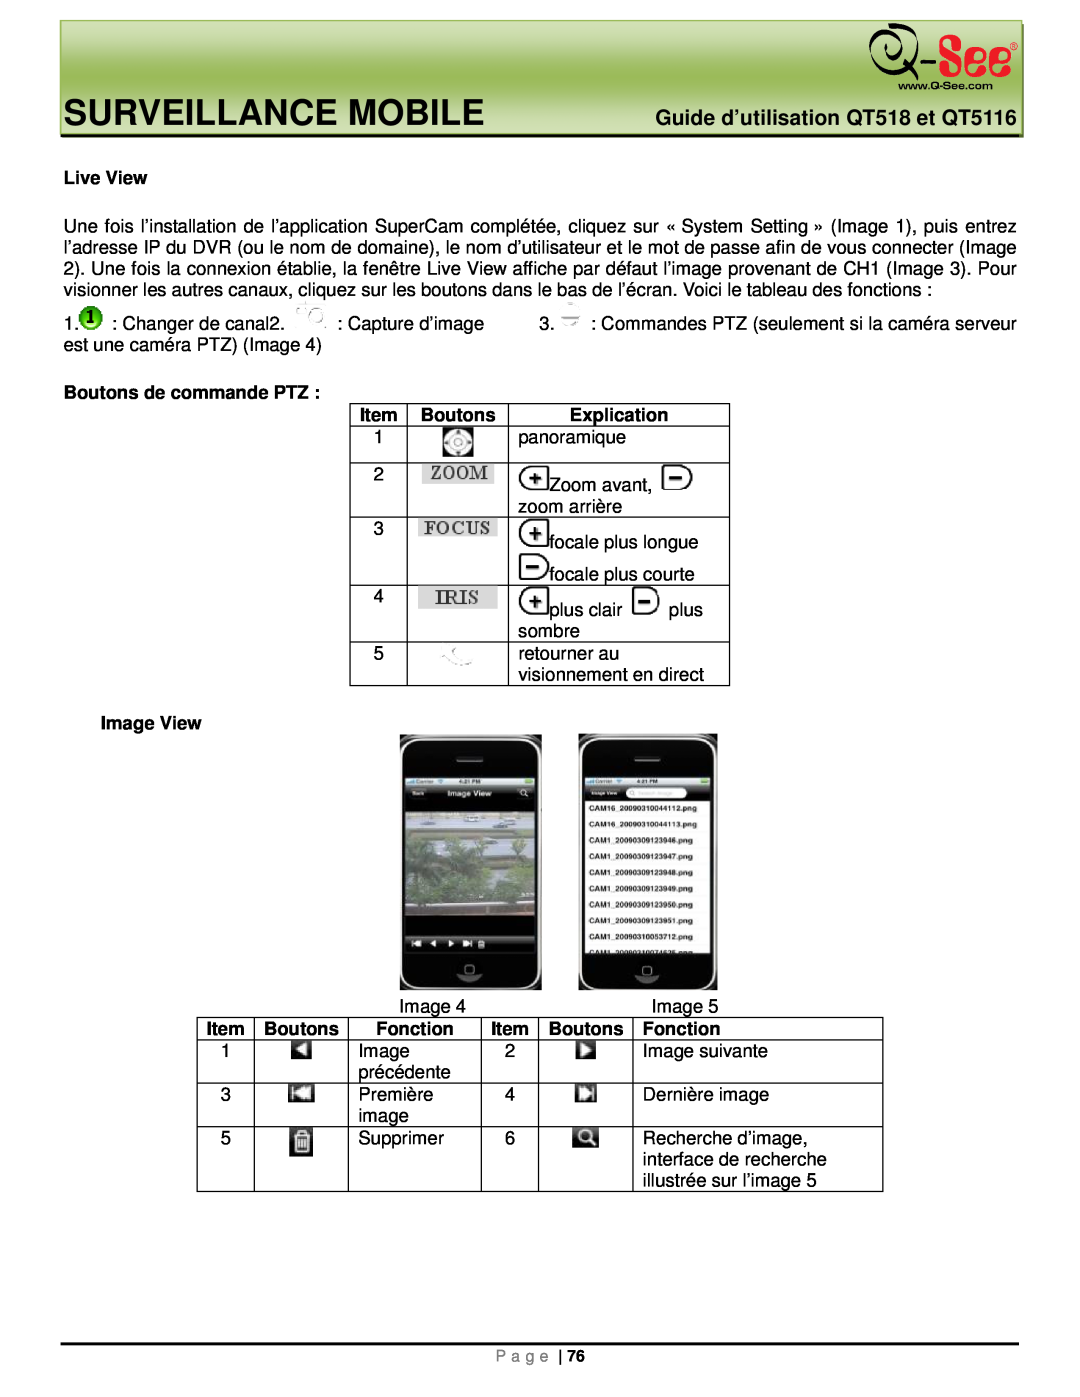 Q-See manual Surveillance Mobile, Guide d’utilisation QT518 et QT5116, Live View 